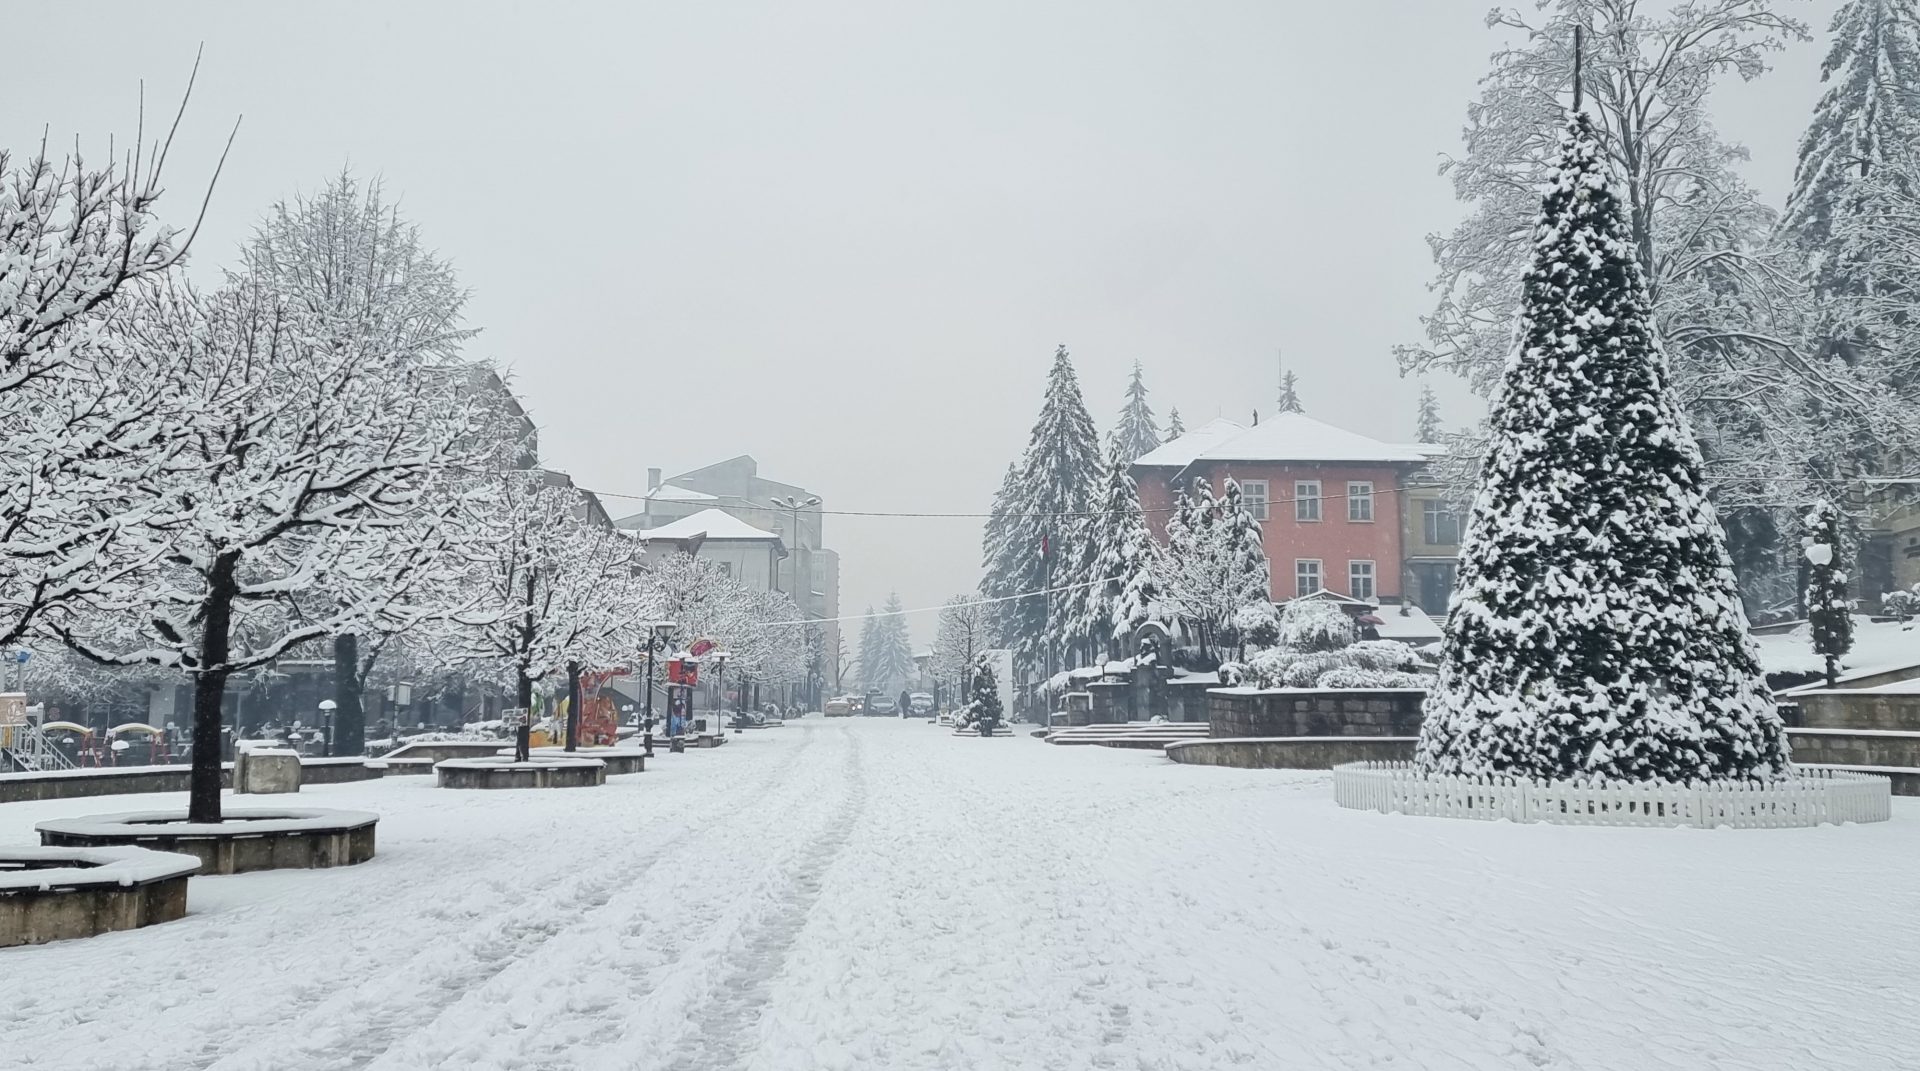 Времето в България: Валежи от дъжд ще преминават в сняг във вторник